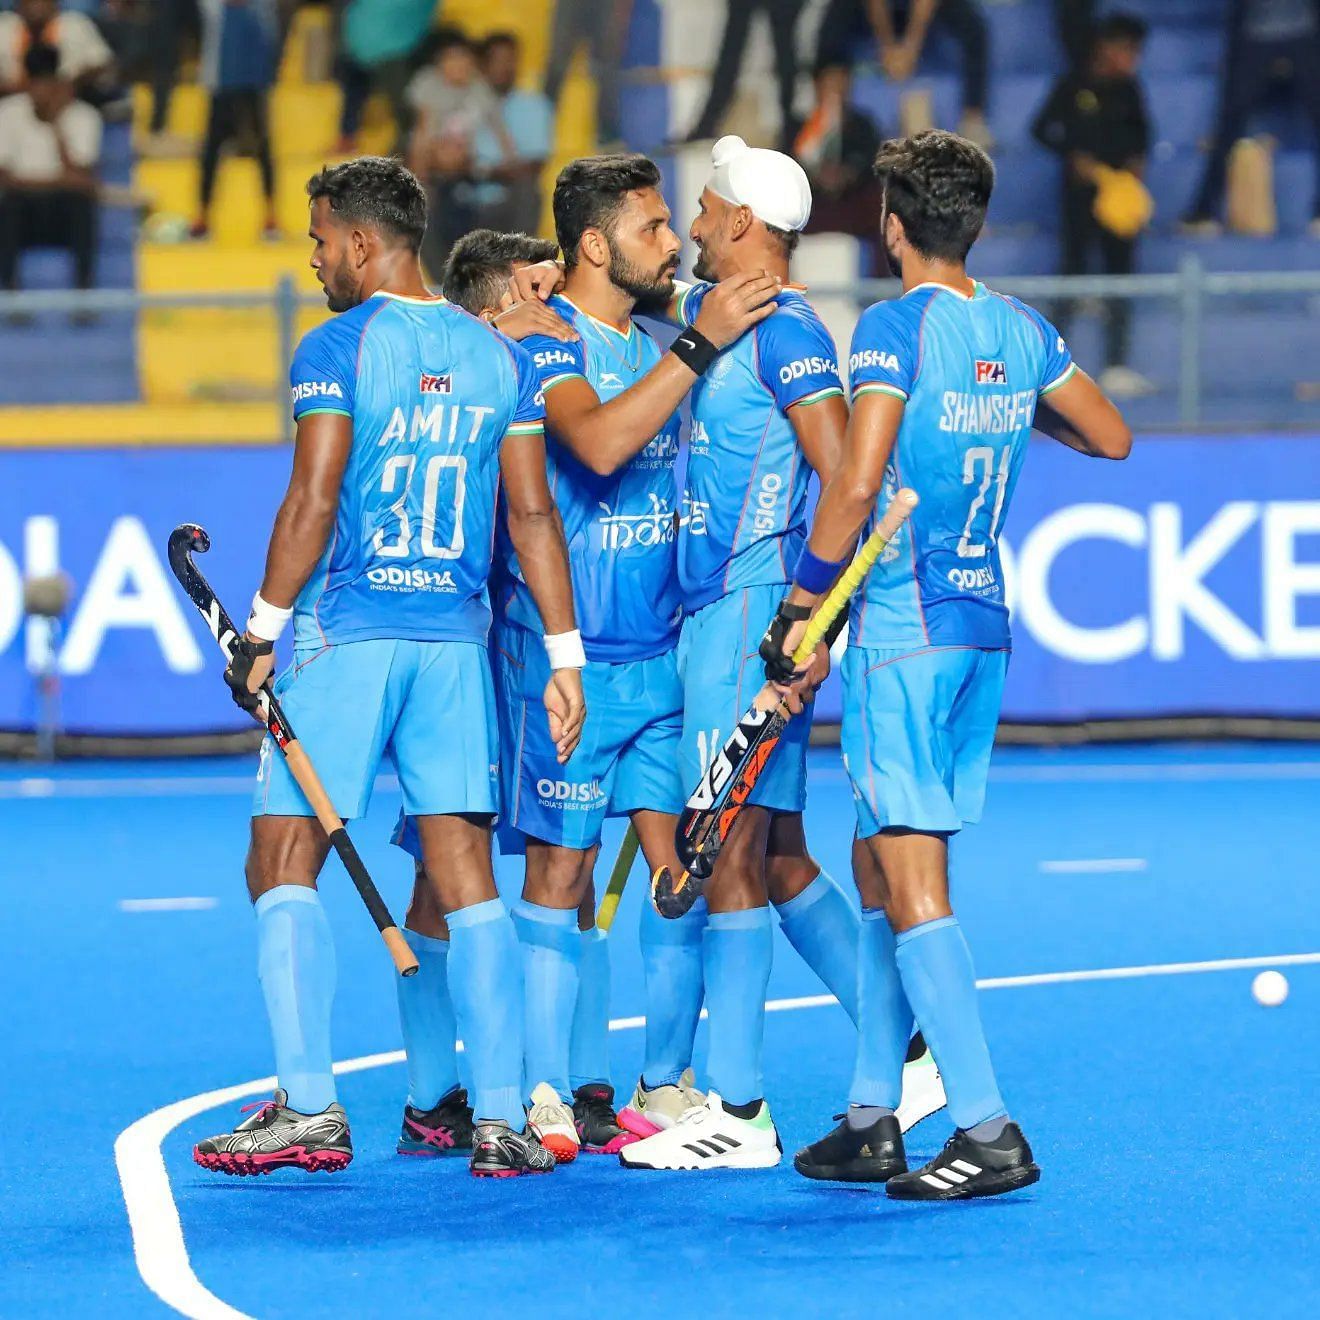 भारत की यह टूर्नामेंट में खेले गए चार मैचों में तीसरी जीत है। (सौ. - हॉकी इंडिया)